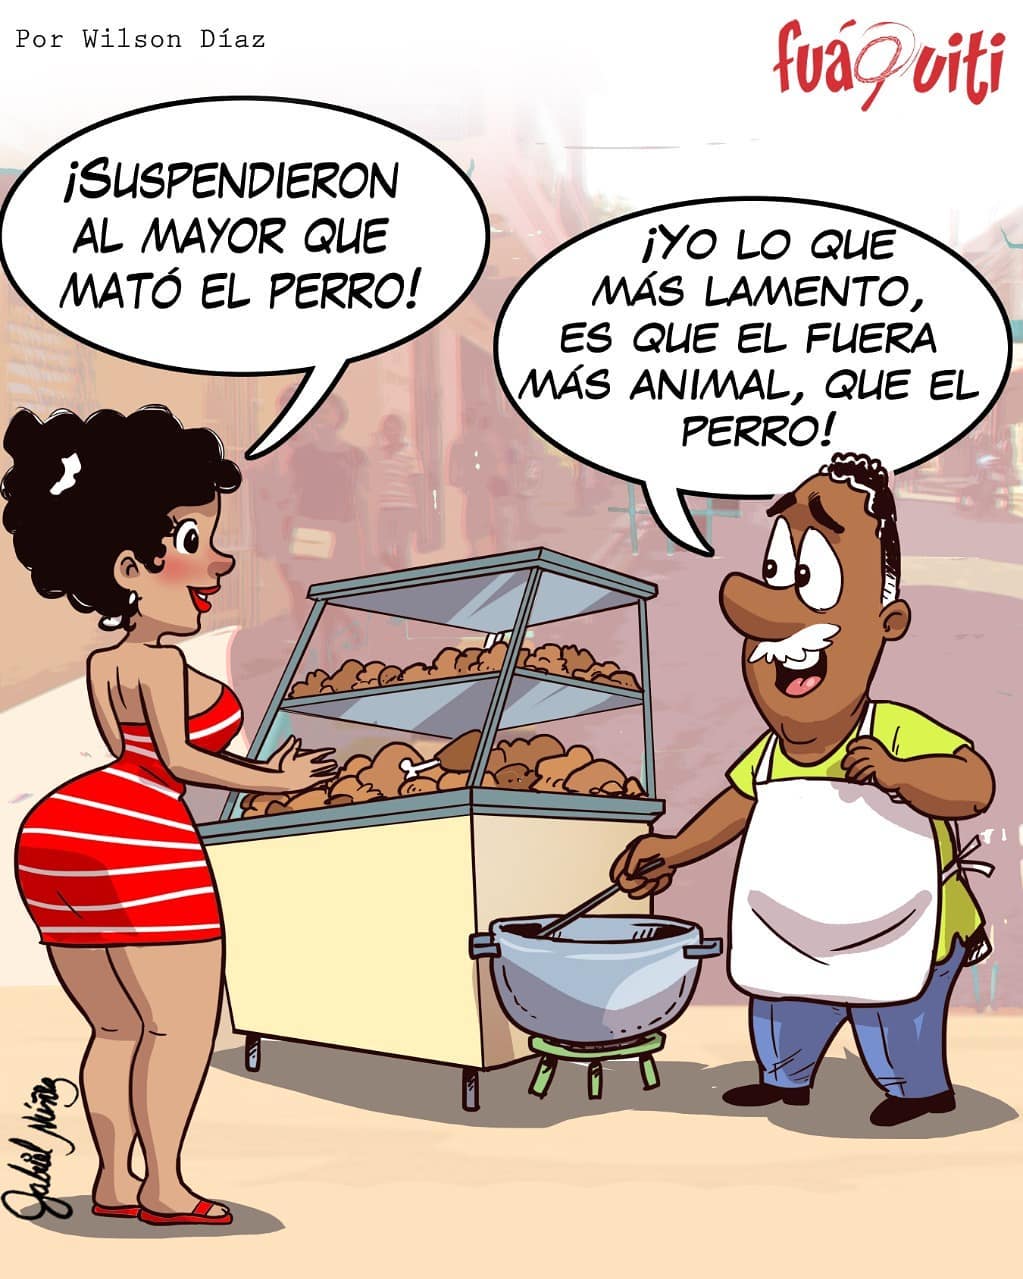 Caricatura Fuaquiti, 25 de Octubre, 2020 - Dominicana.do